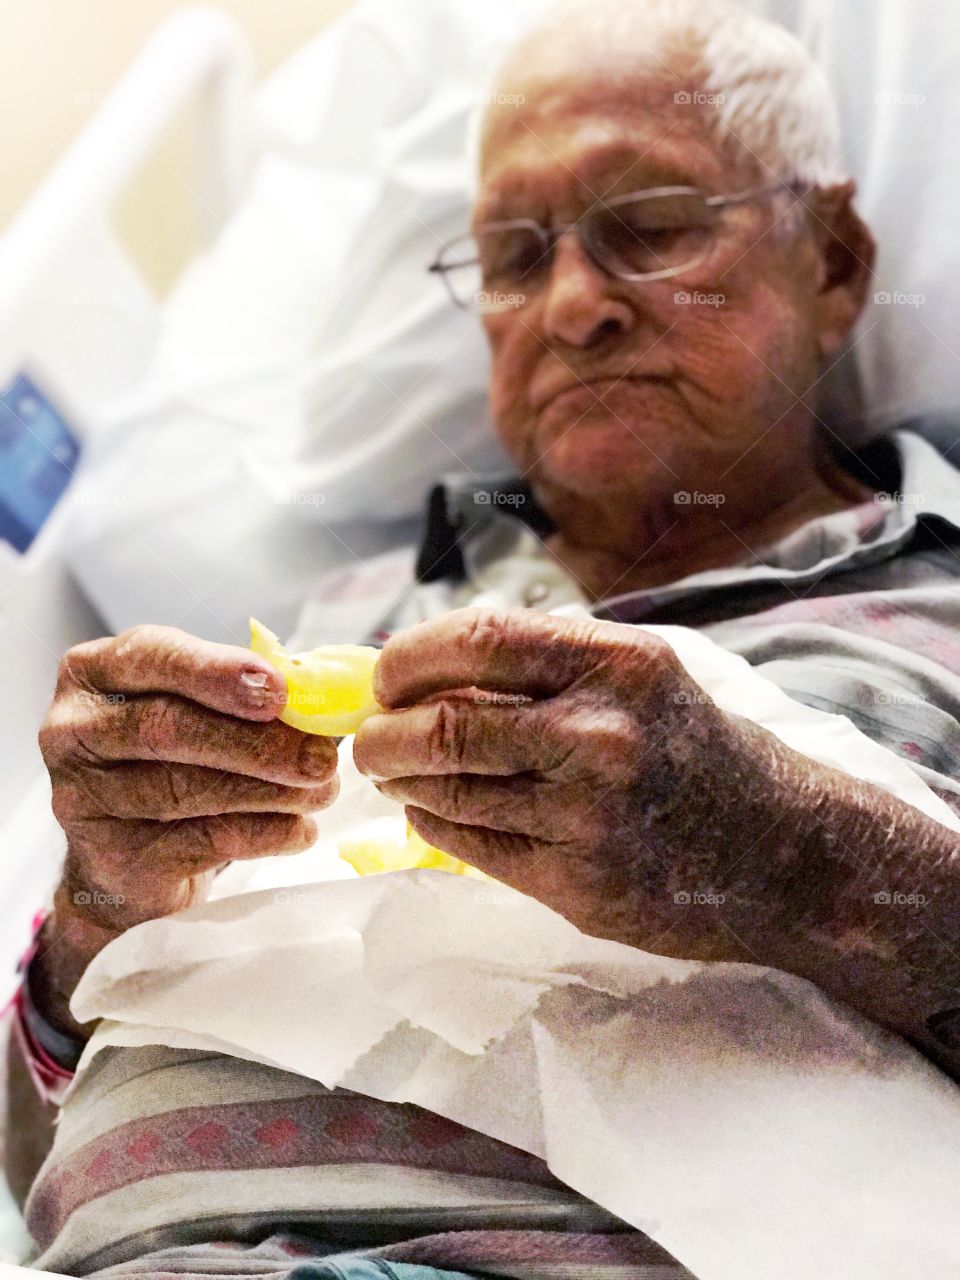 Senior man in hospital bed